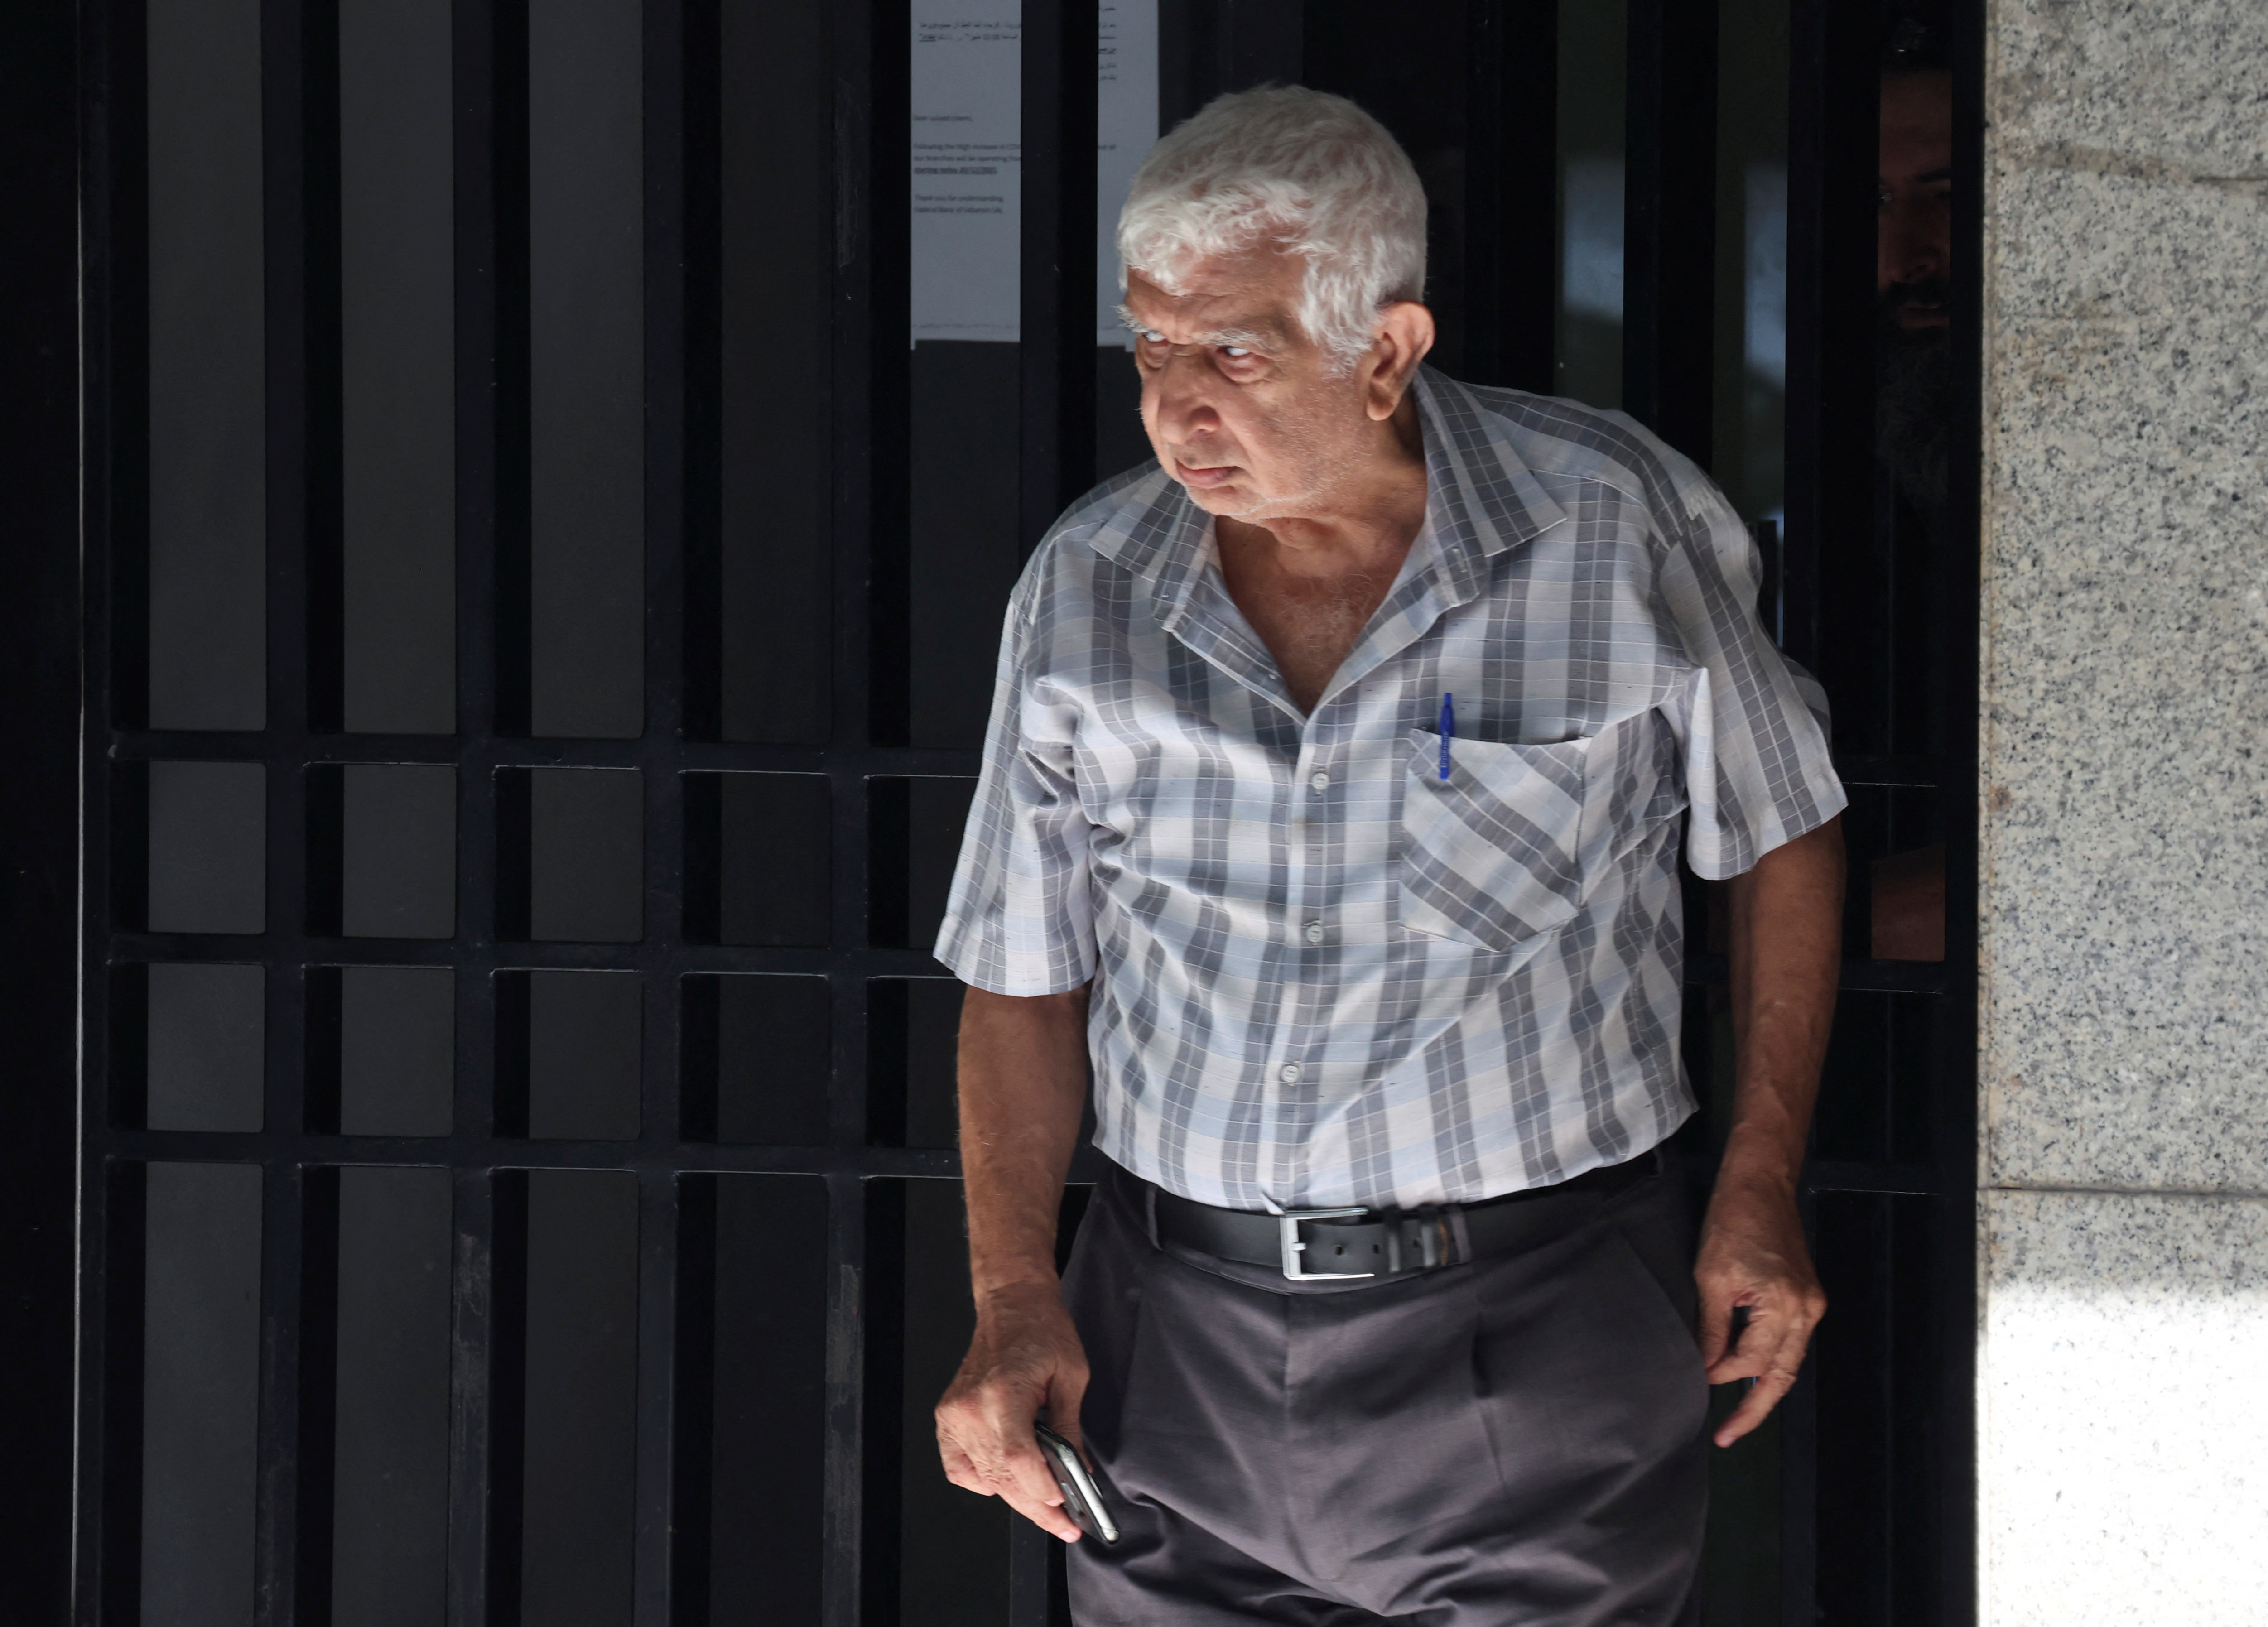 Un hombre de edad avanazada sale del banco (REUTERS/Mohamed Azakir)